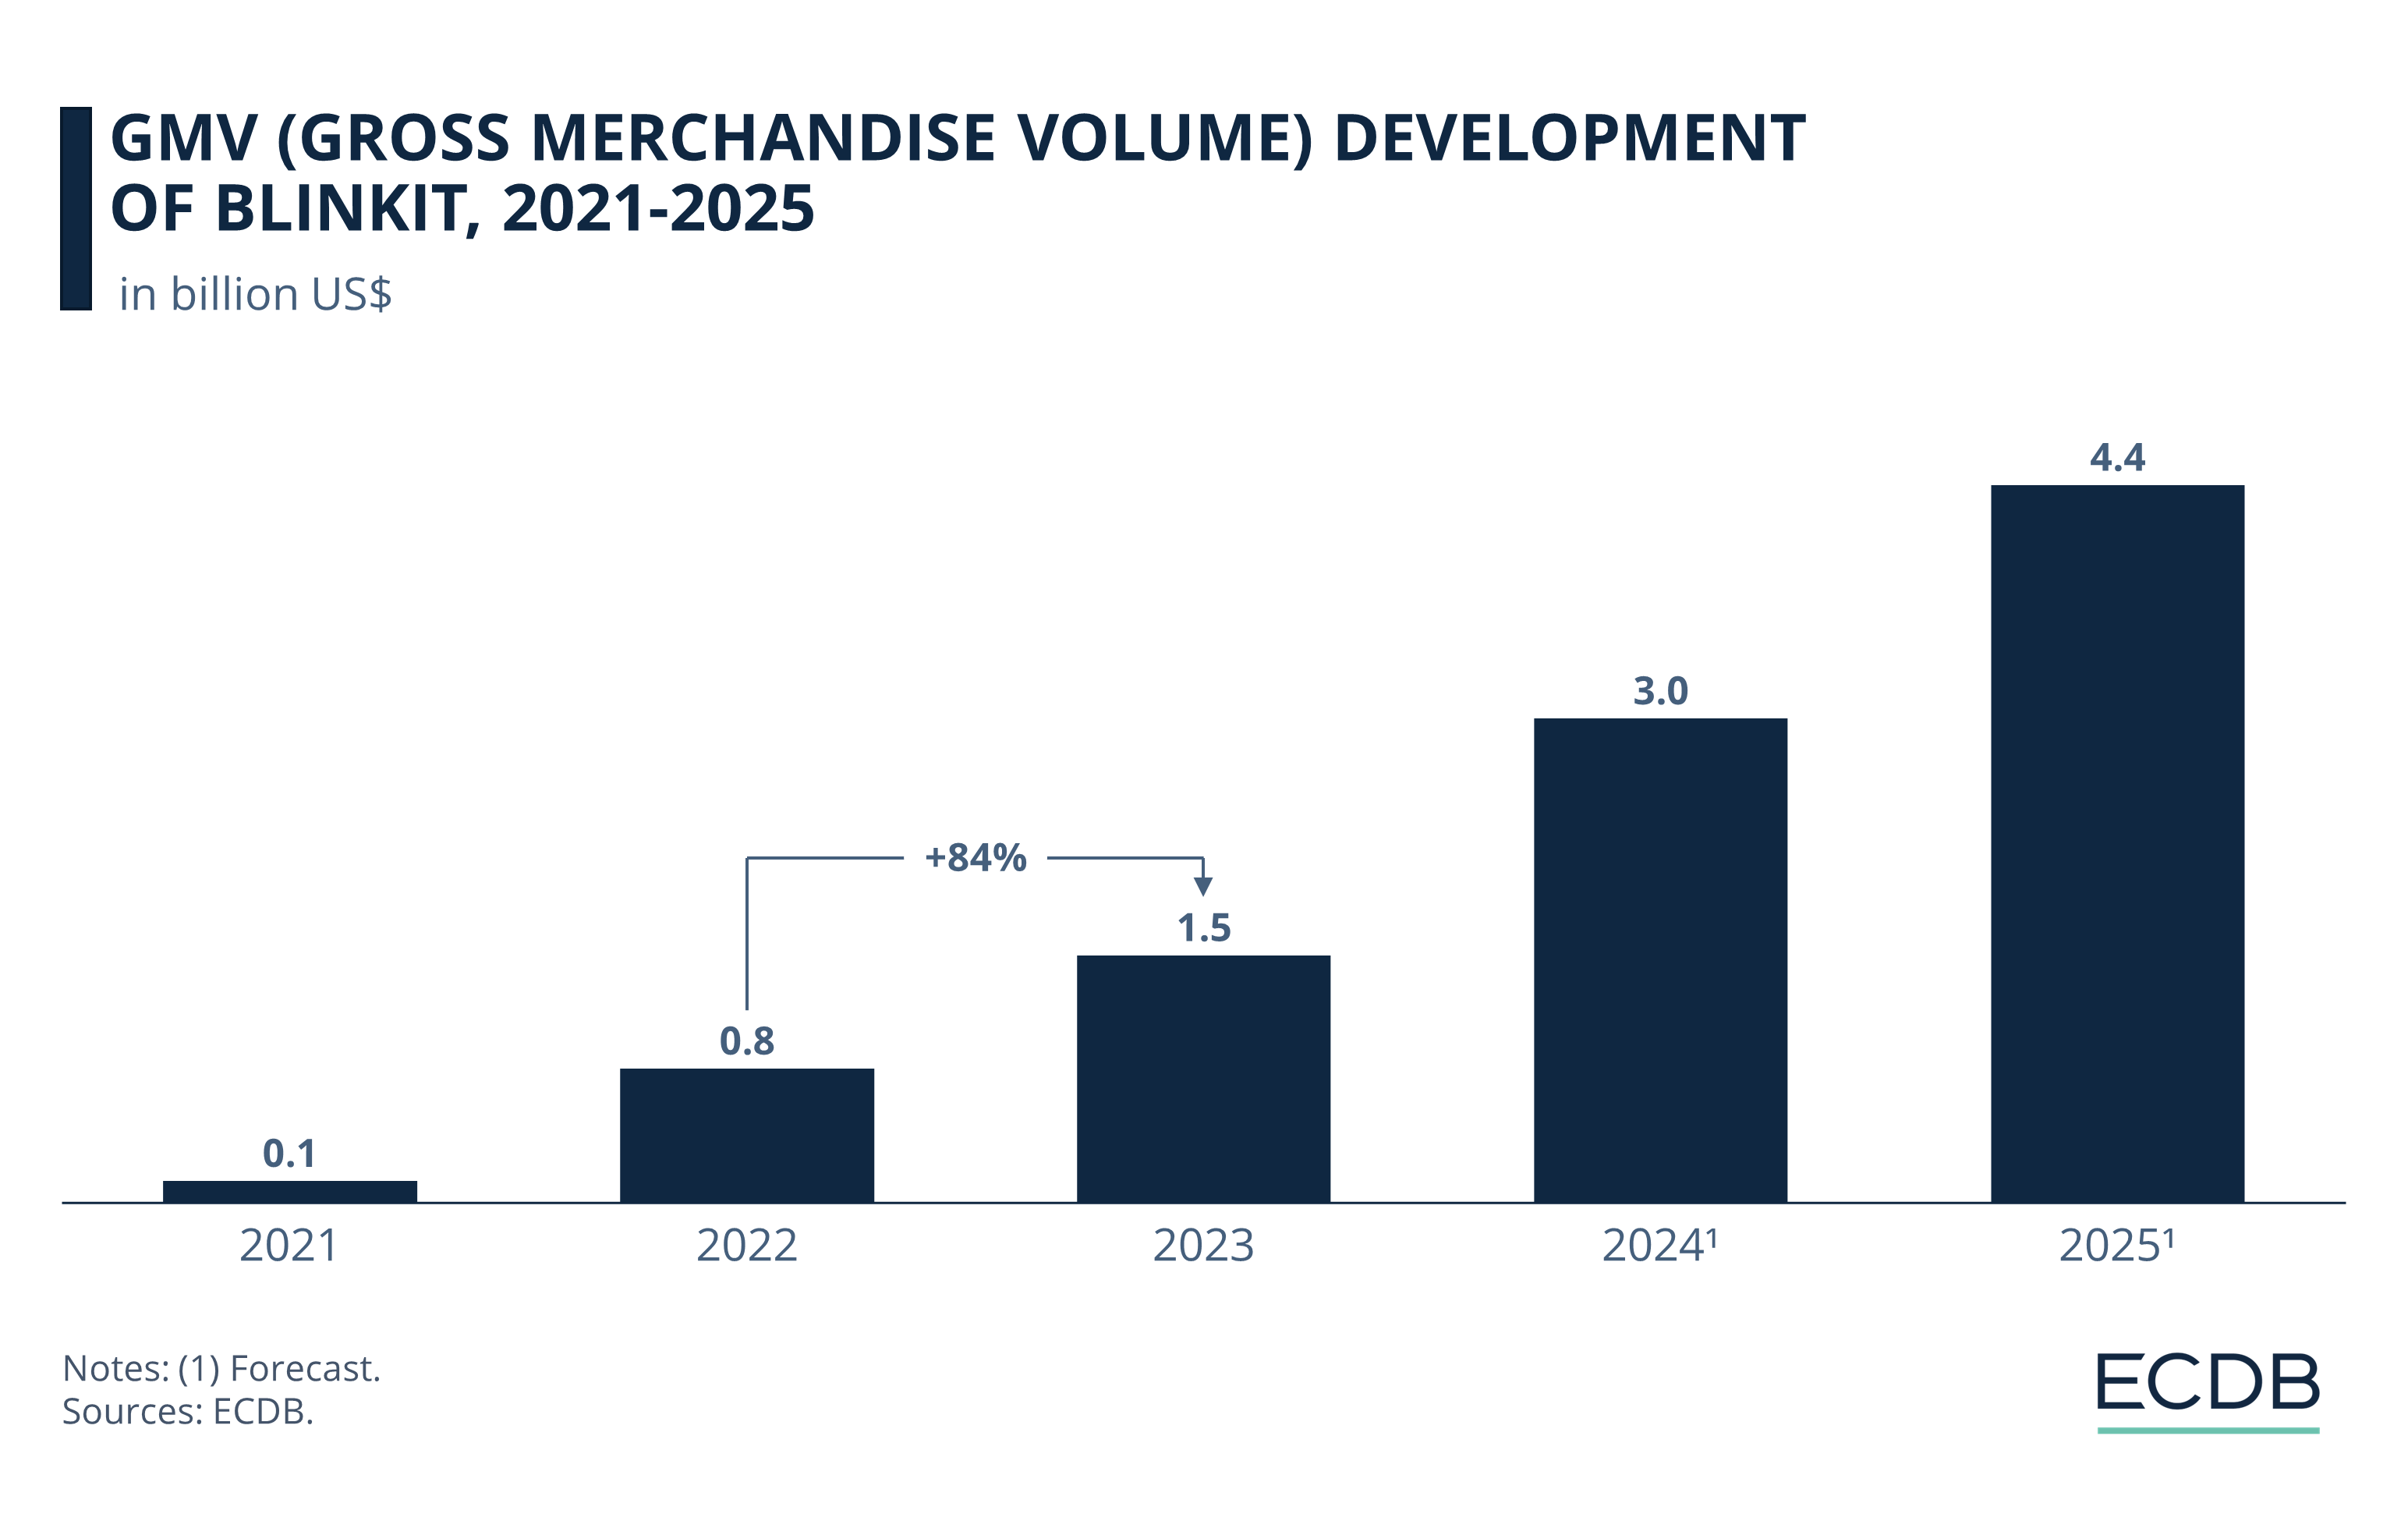 GMV (Gross Merchandise Volume) Development of Blinkit, 2021-2025